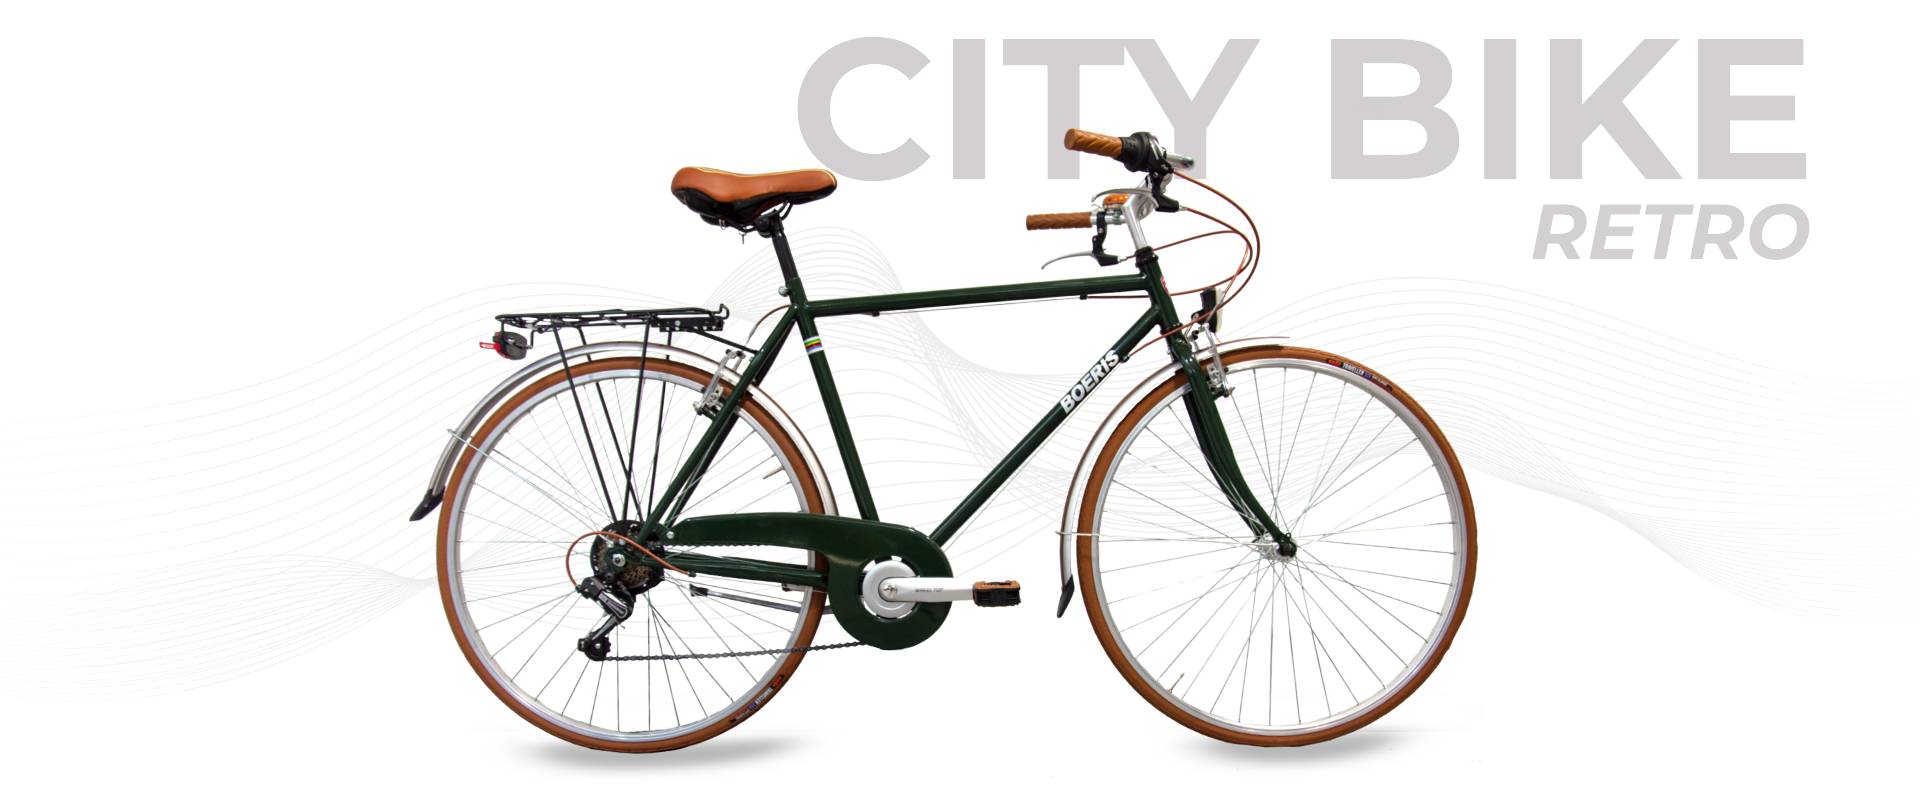 City bike Retrò Boeris Bikes Torino colore verdone e marrone